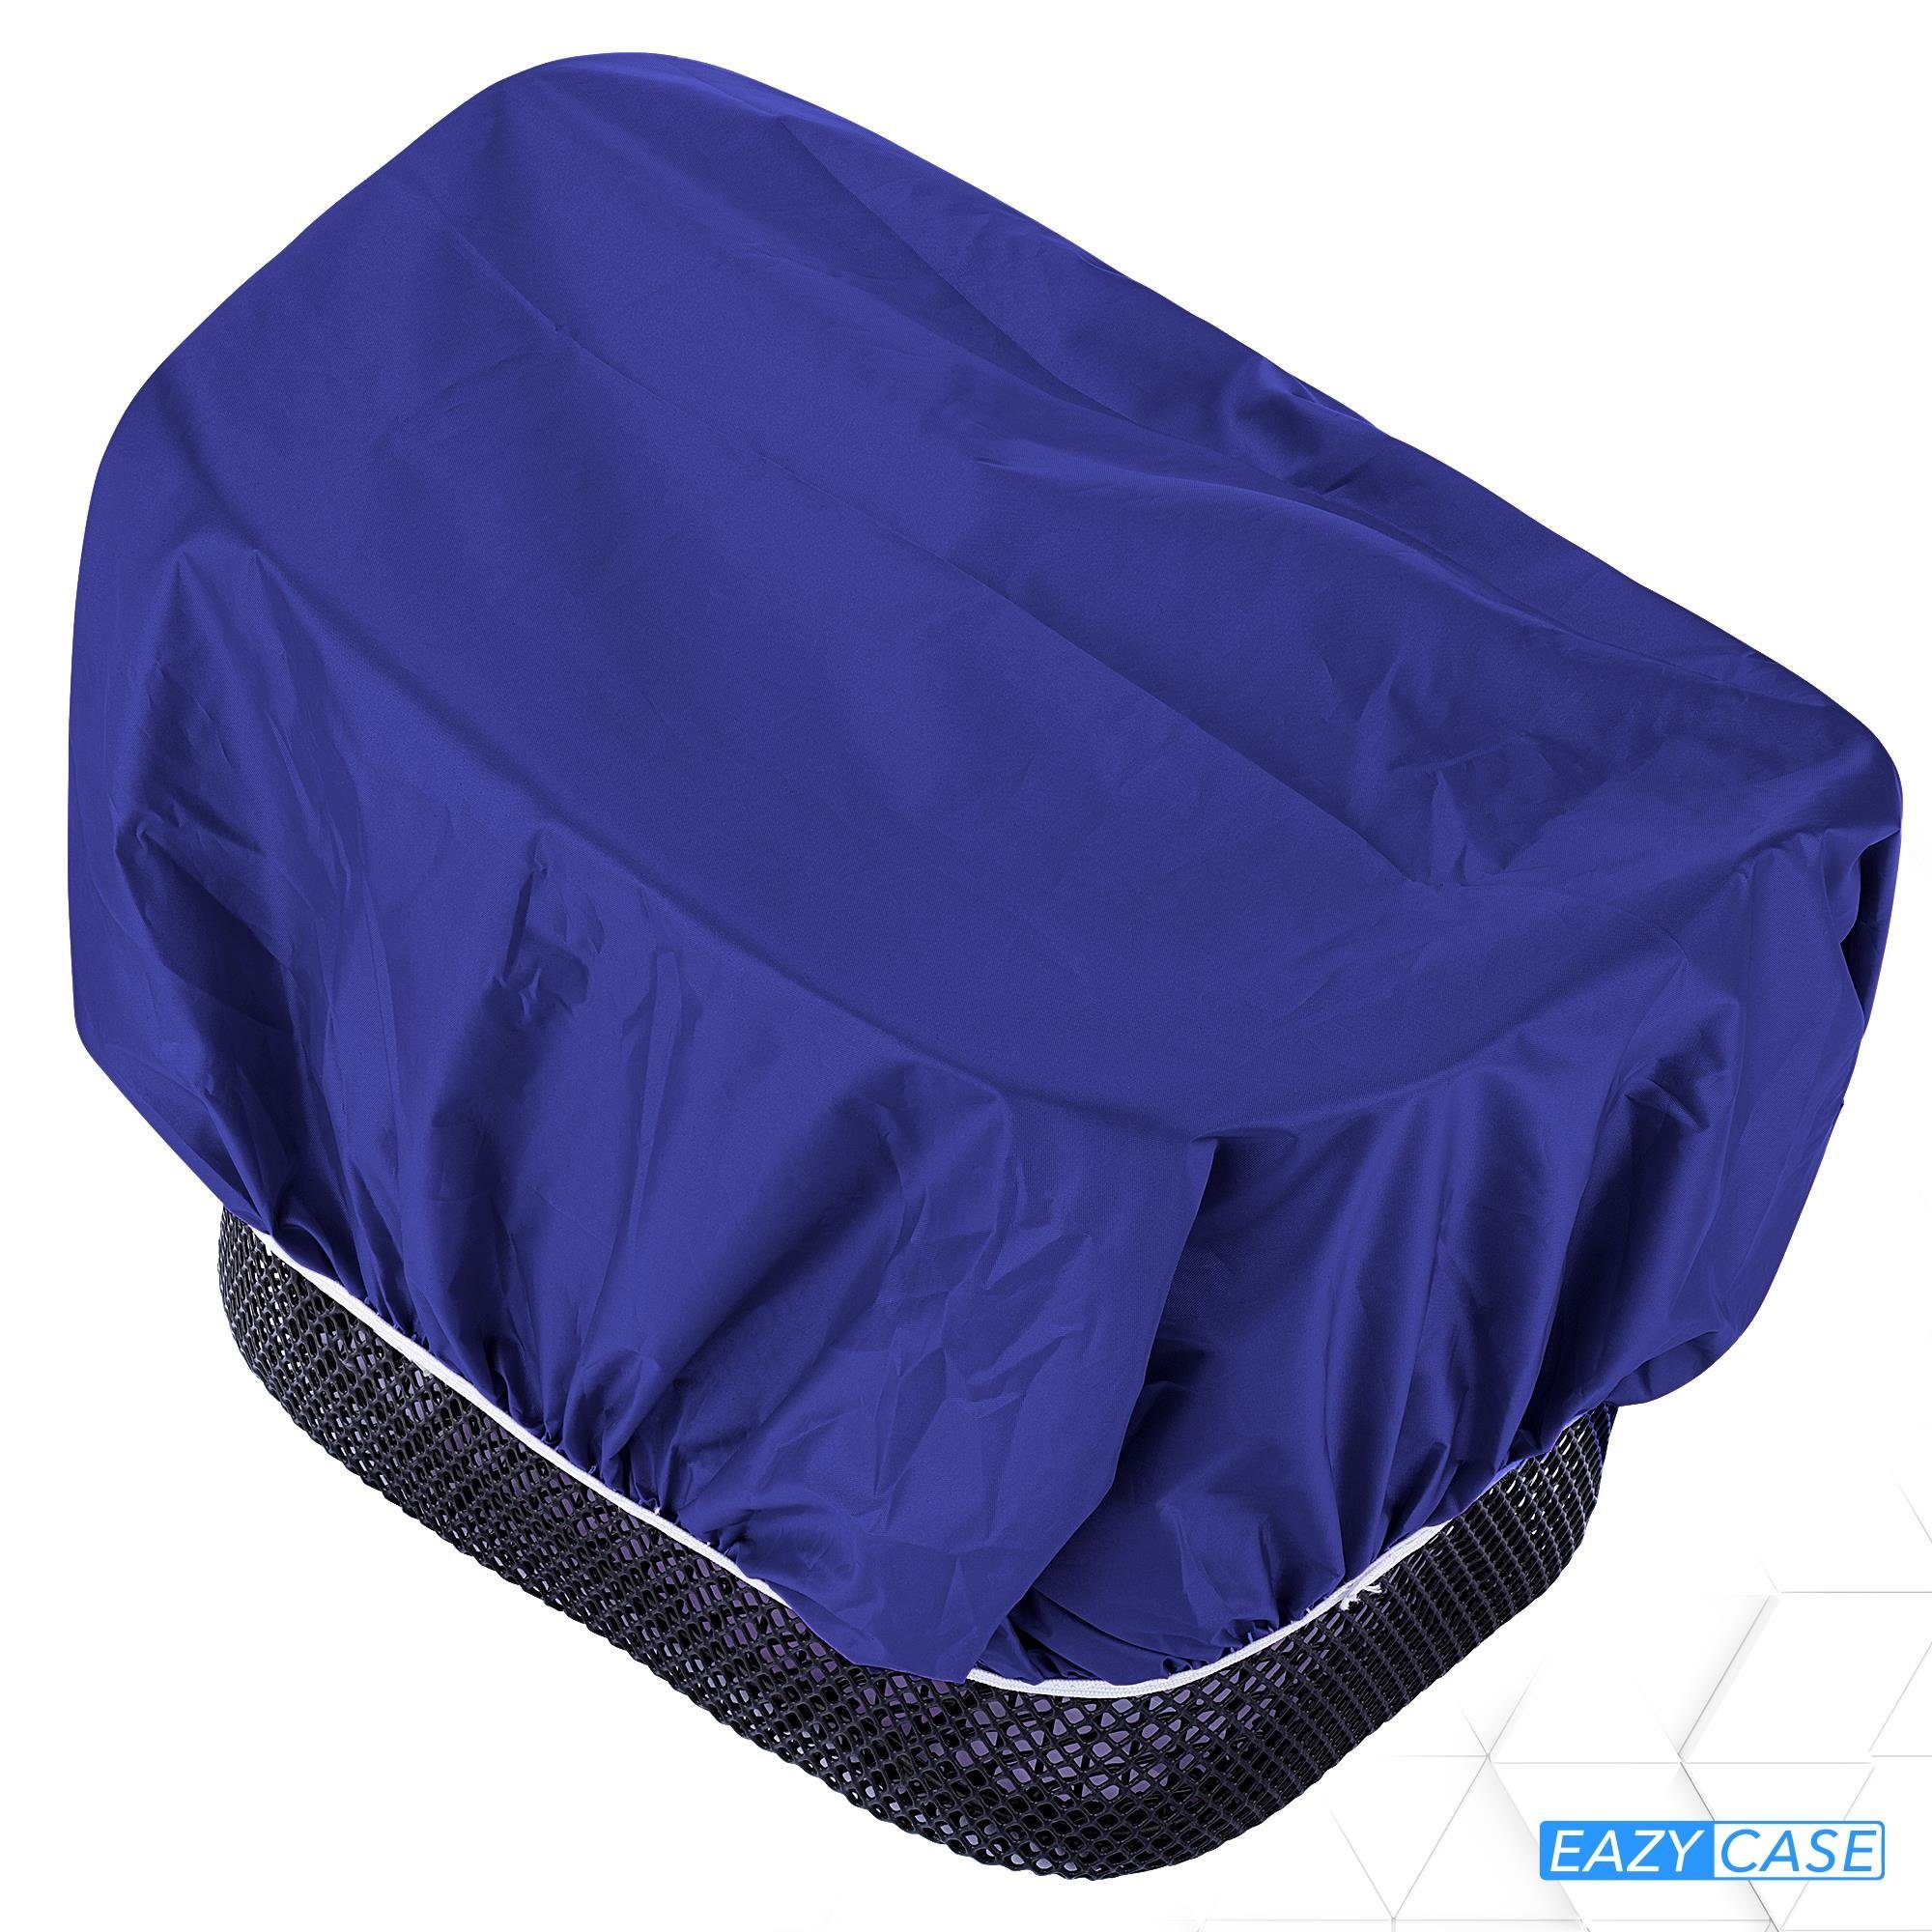 Universal für EAZY Fahrradkorb CASE Regenhülle Blau Korbüberzug Regenschutz Körbe Fahrradkorb wasserabweisend Korb, für